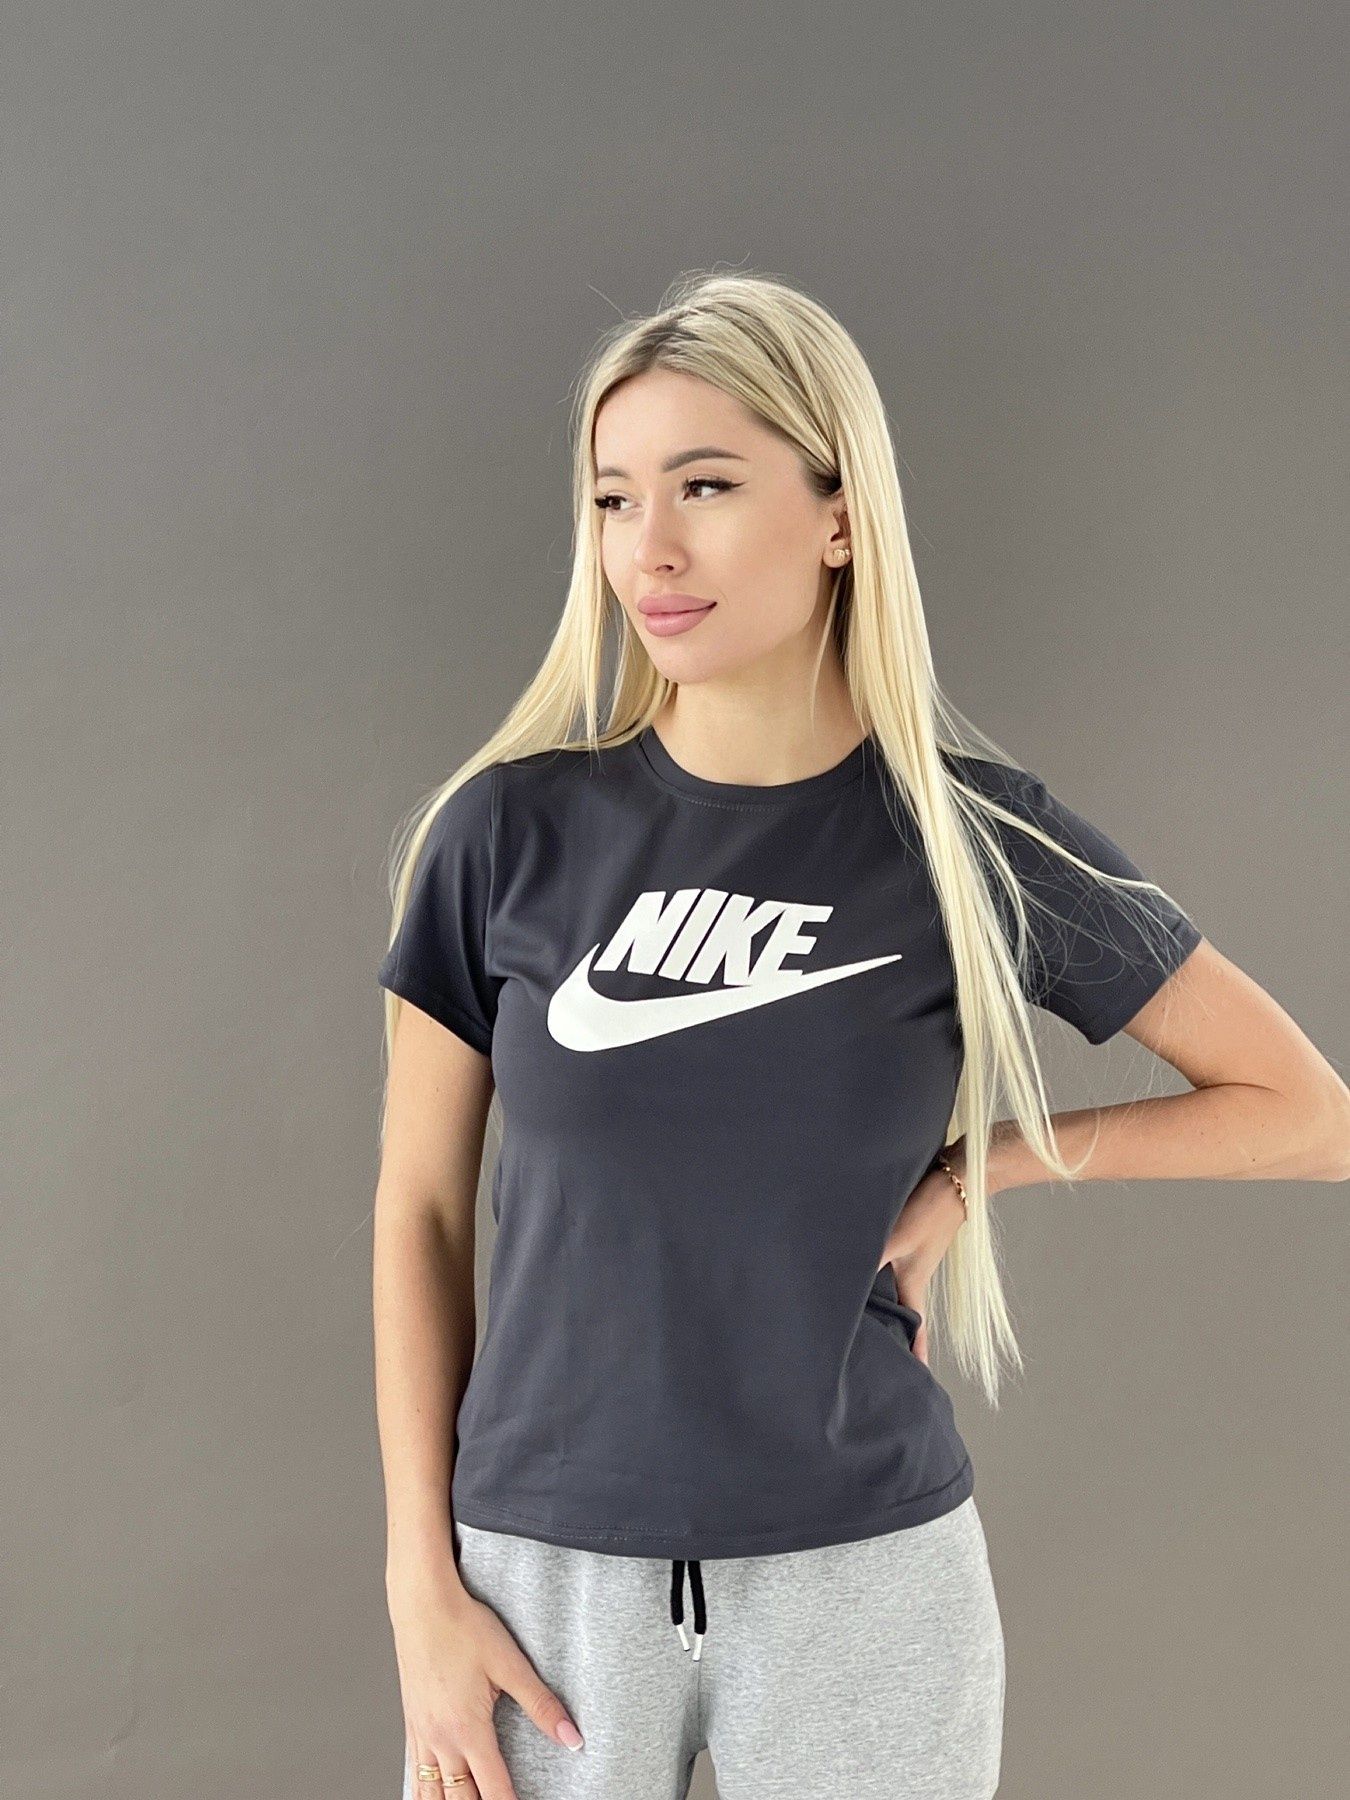 Шорти, футболки для дітей, хлопців, дівчат Nike Adidas 134-164 см